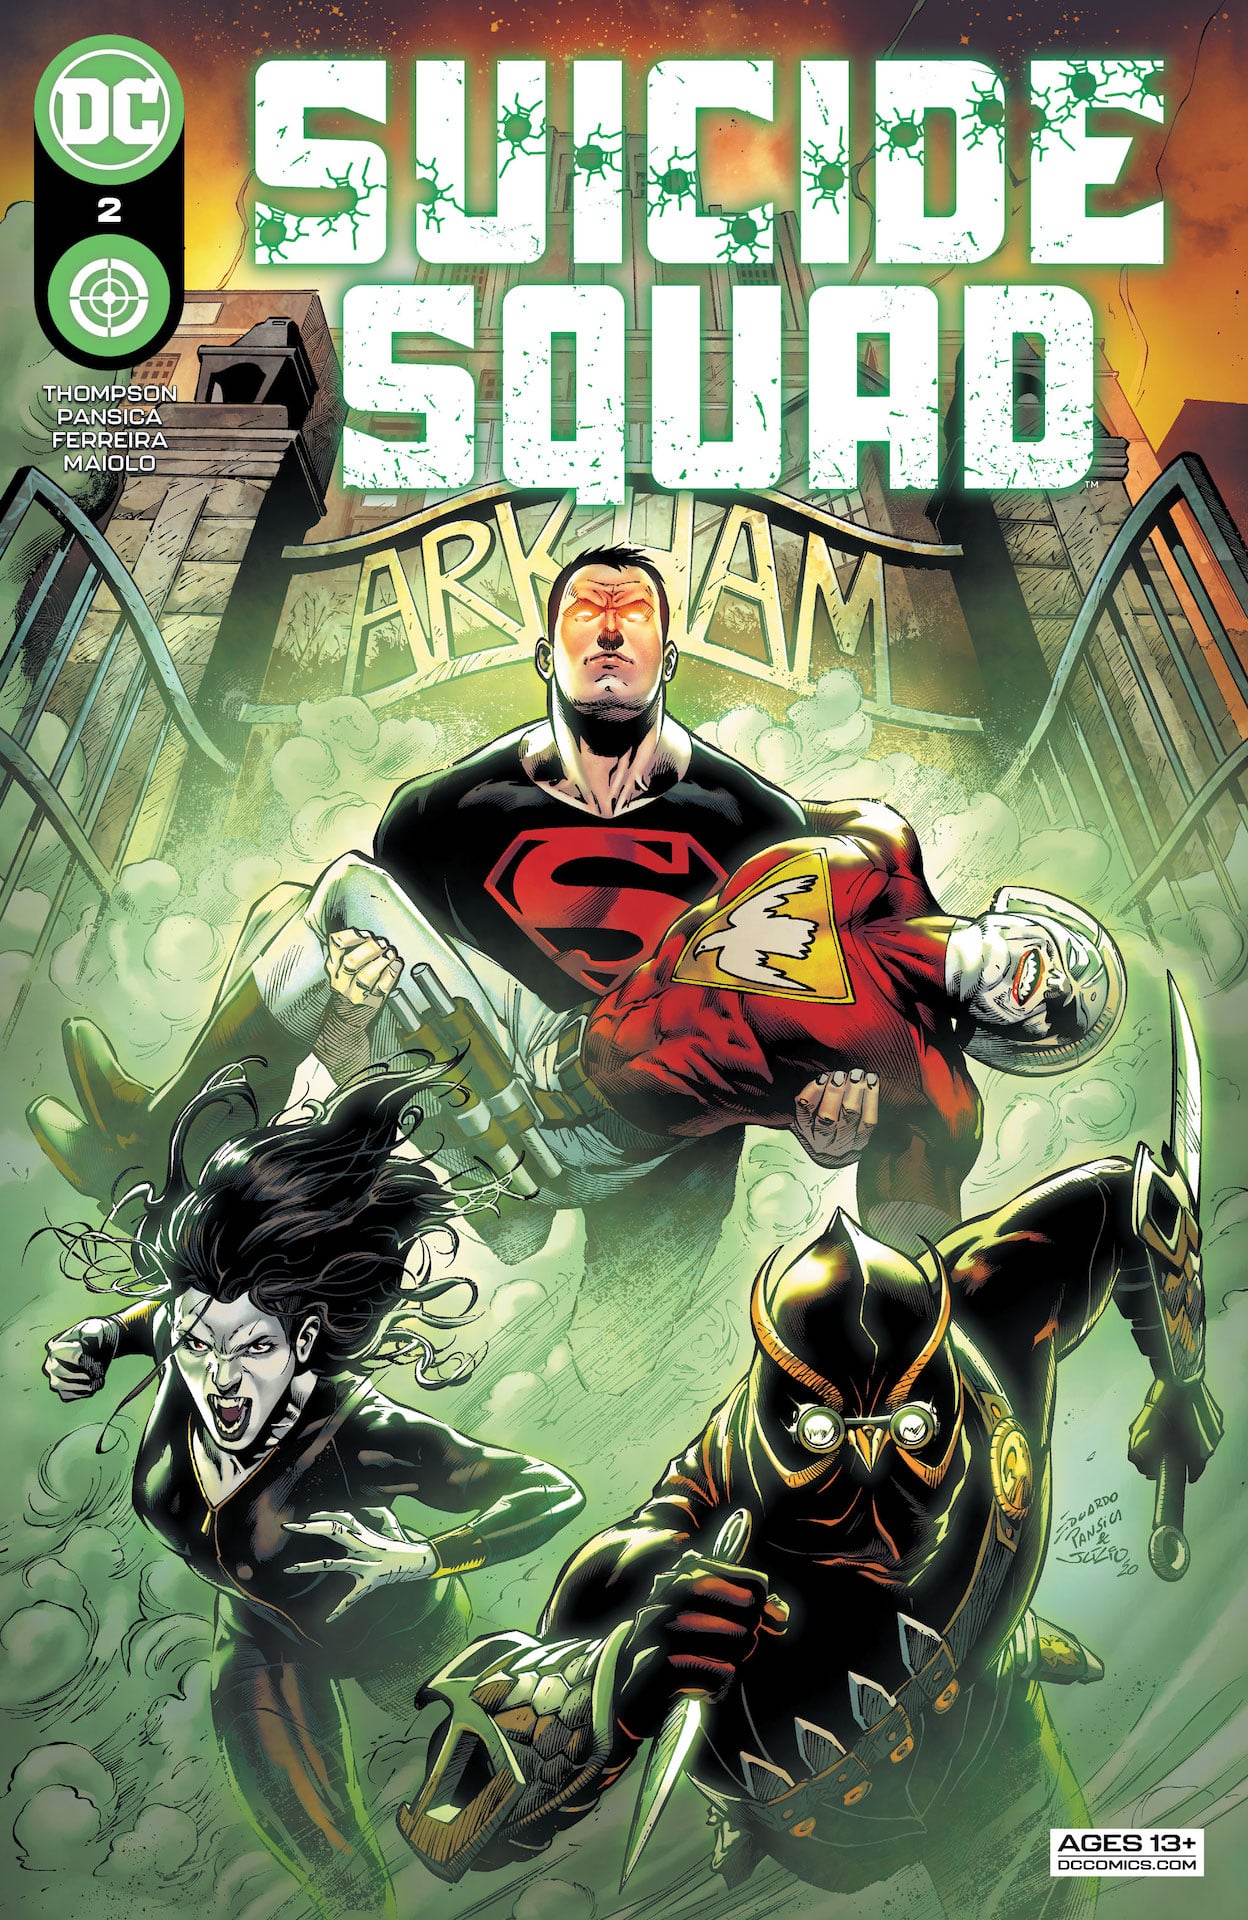 DC Preview: Suicide Squad #2